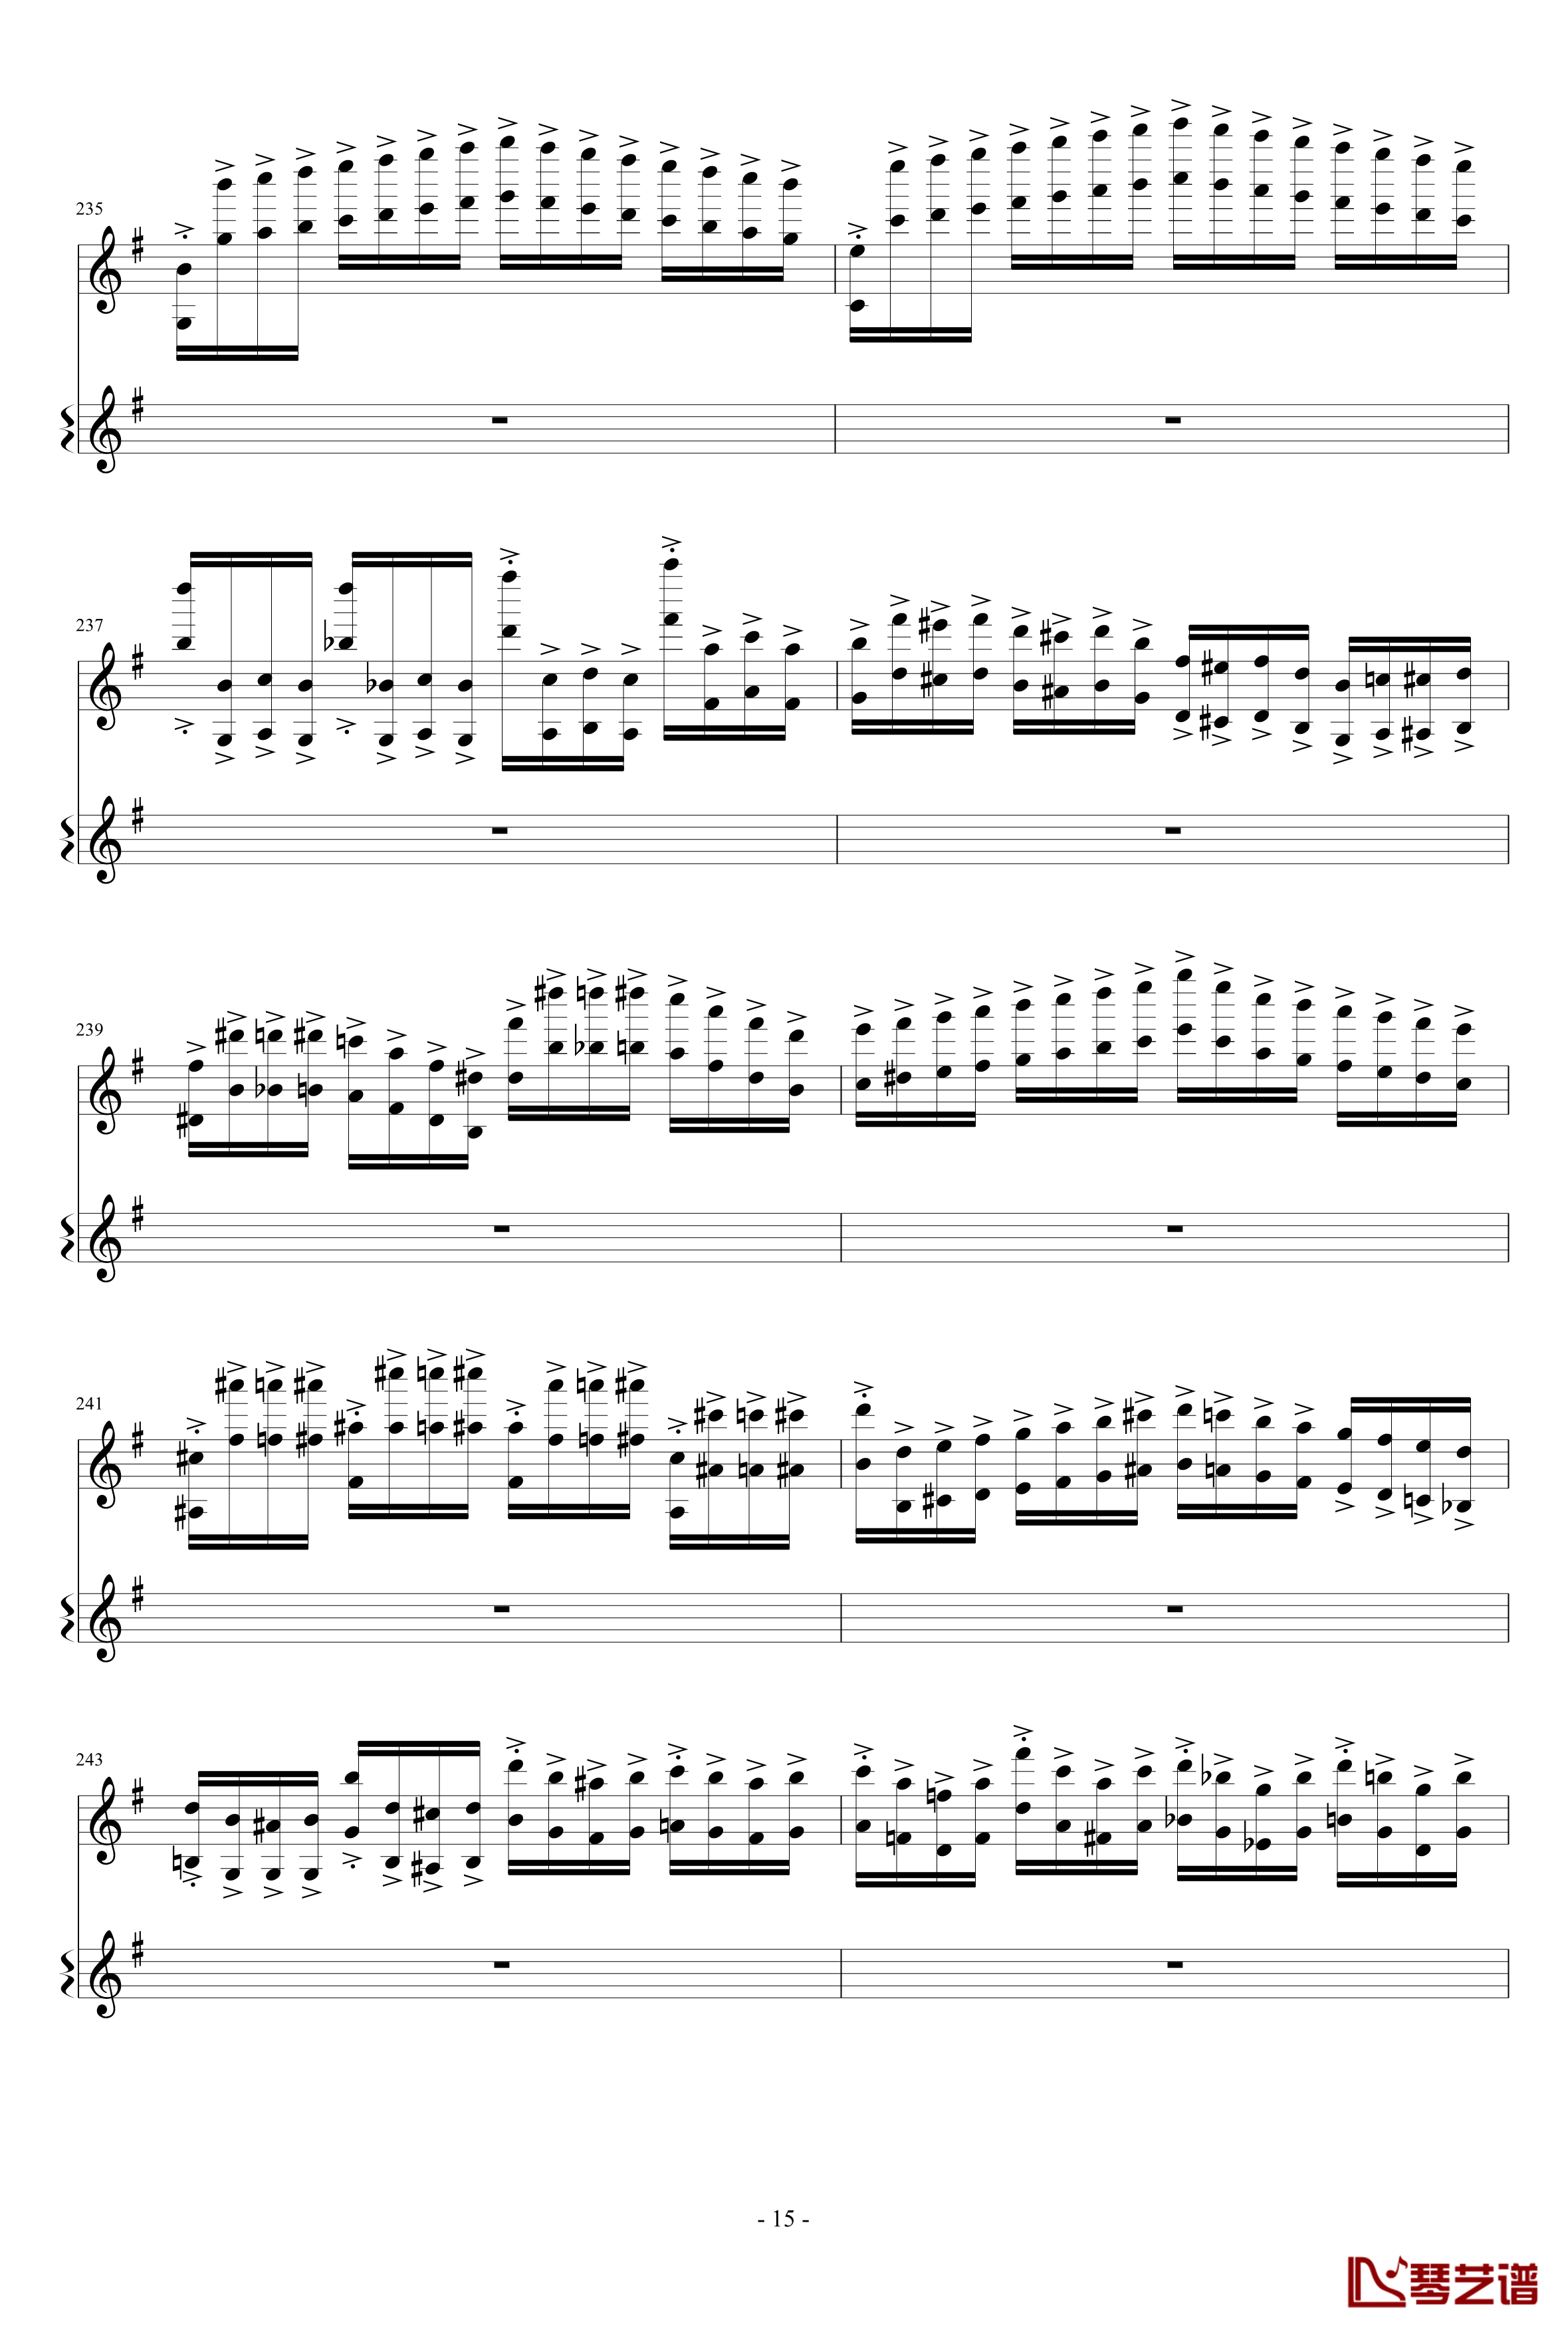 意大利国歌变奏曲钢琴谱-只修改了一个音-DXF15